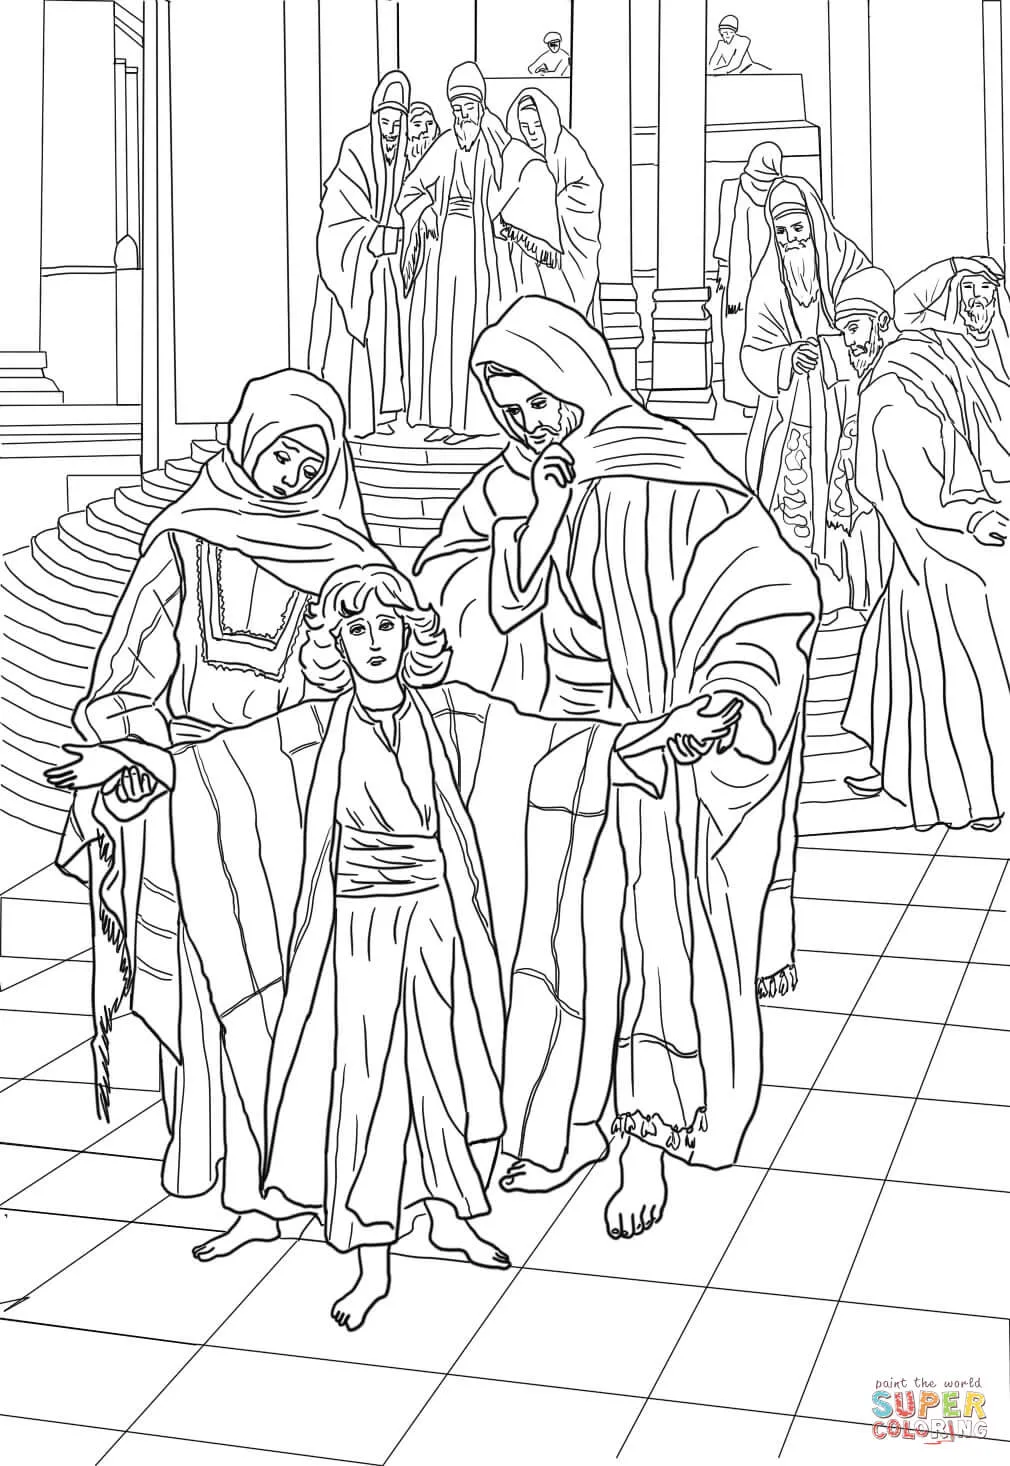 Dibujo de Jesús en el templo a los 12 años para colorear | Dibujos ...